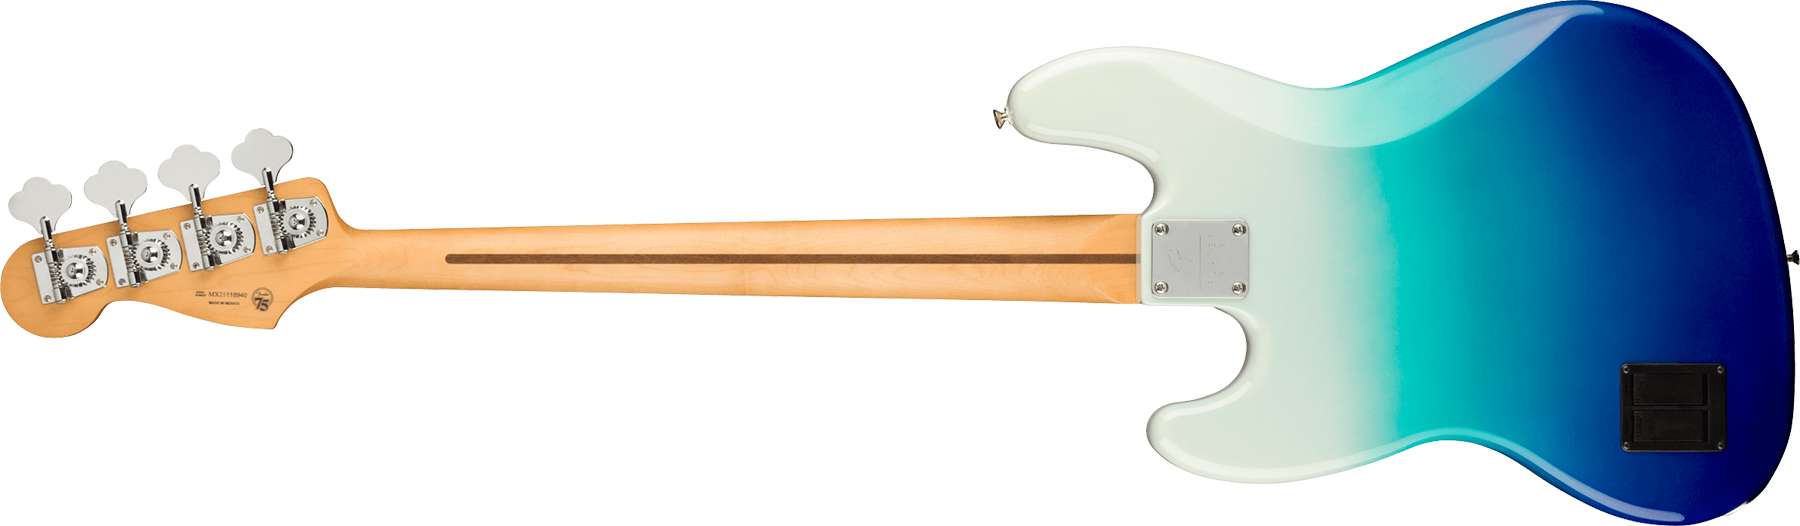 Fender Jazz Bass Player Plus Mex Active Pf - Belair Blue - Solid body elektrische bas - Variation 1